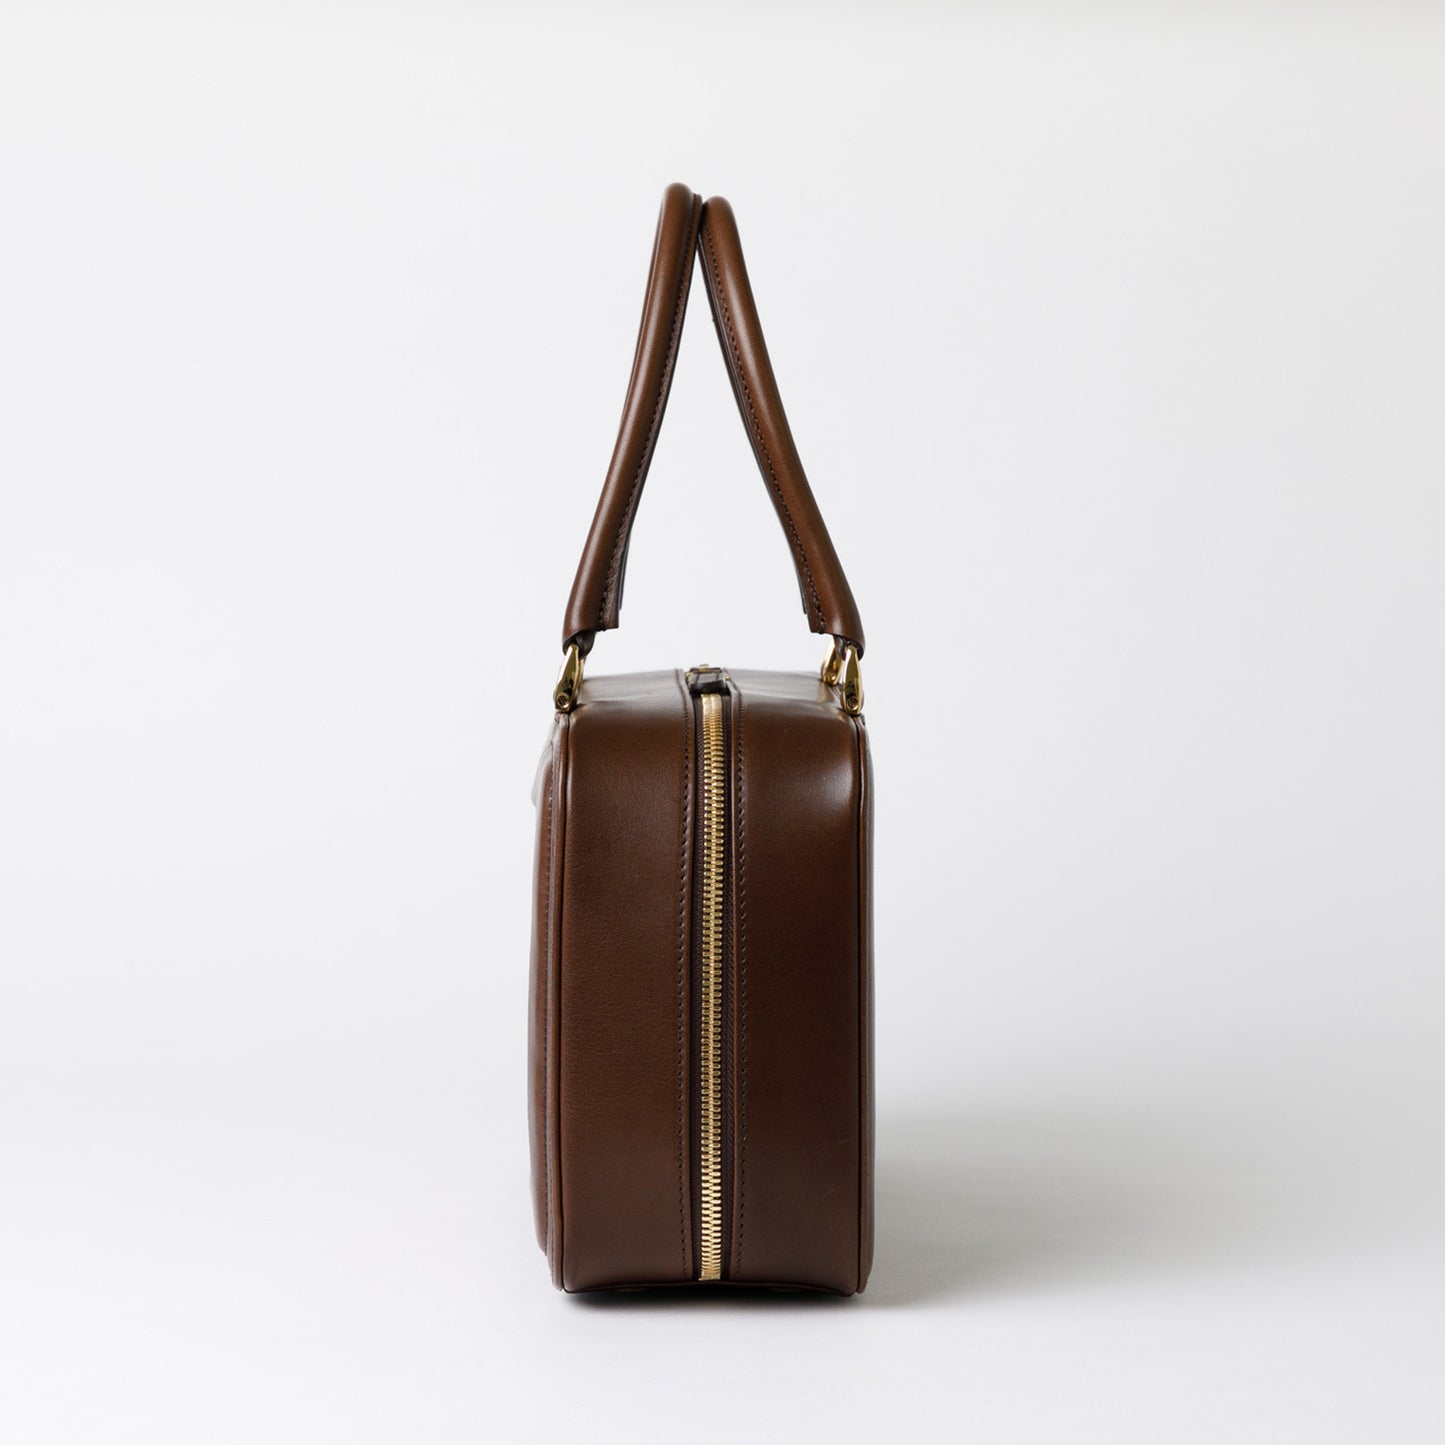 Hanakumiko handbag / Brown × Blue